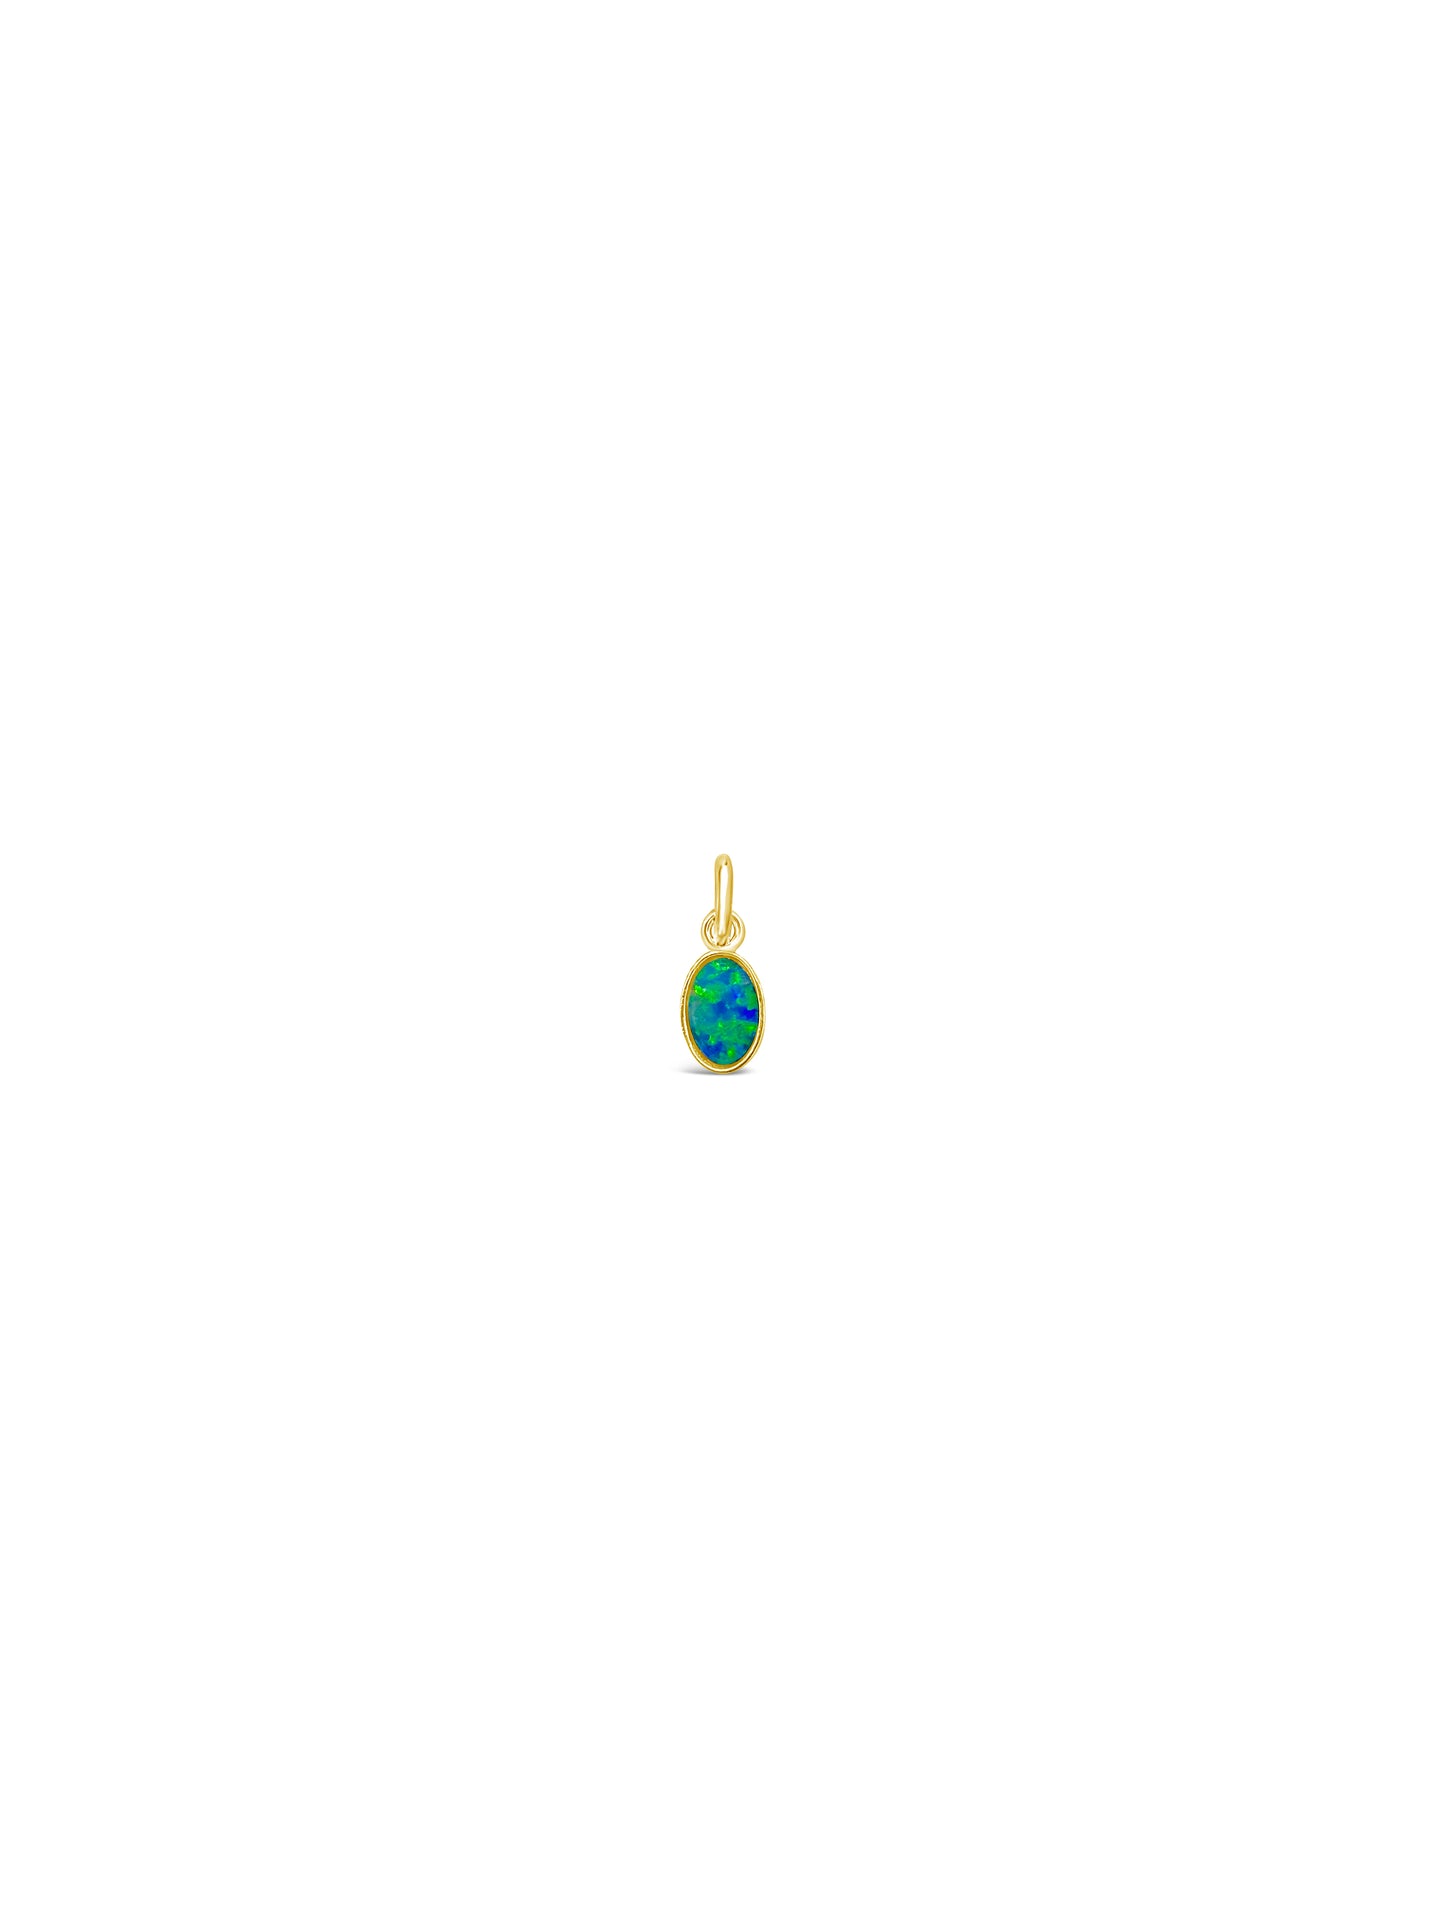 Tiny Opal Necklace, Gold